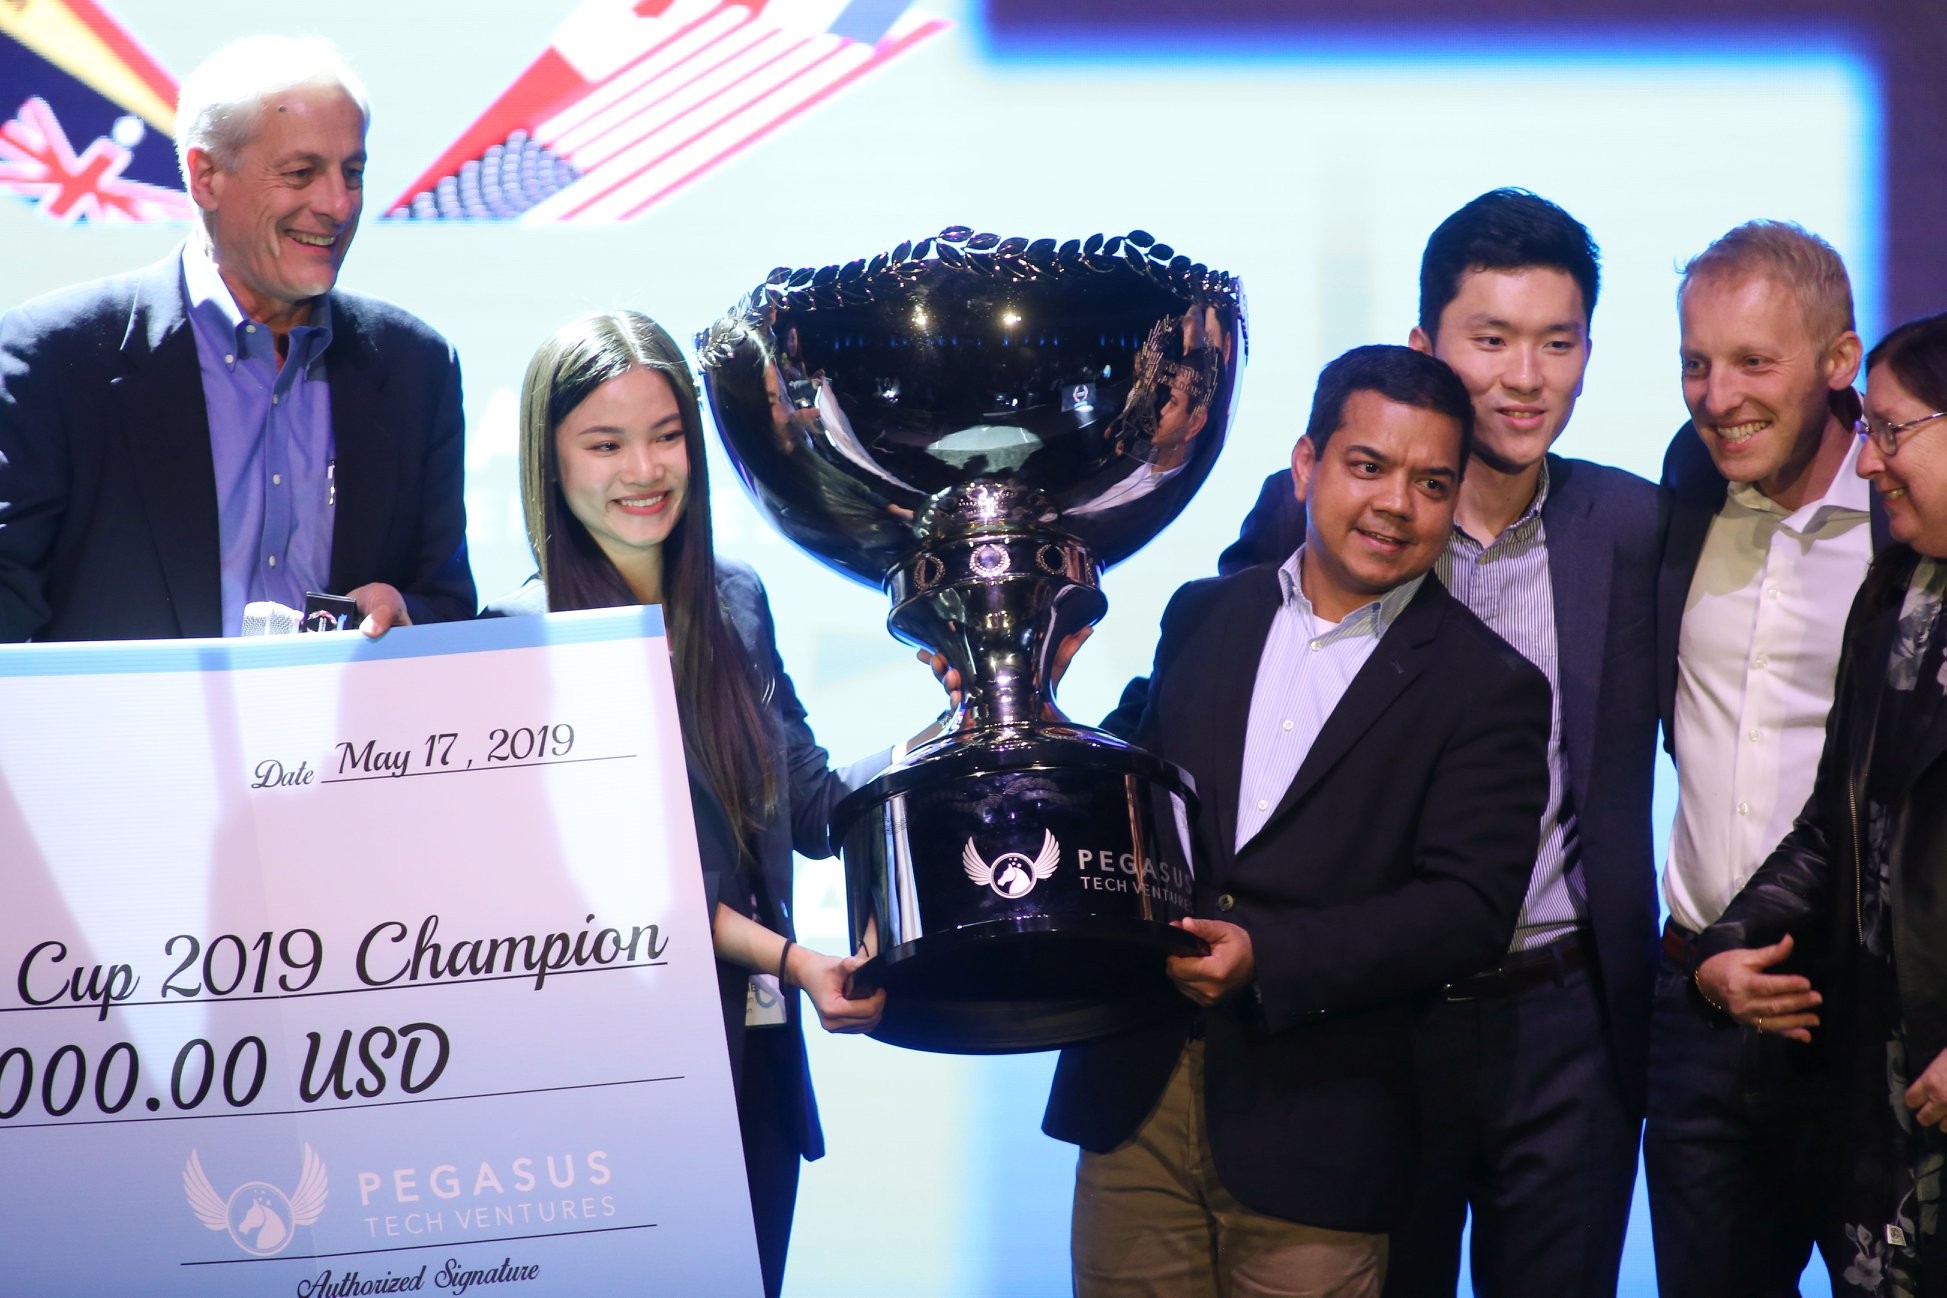 Vítězové SWC z roku 2019 z vietnamské společnosti Abivin (foto SWC)